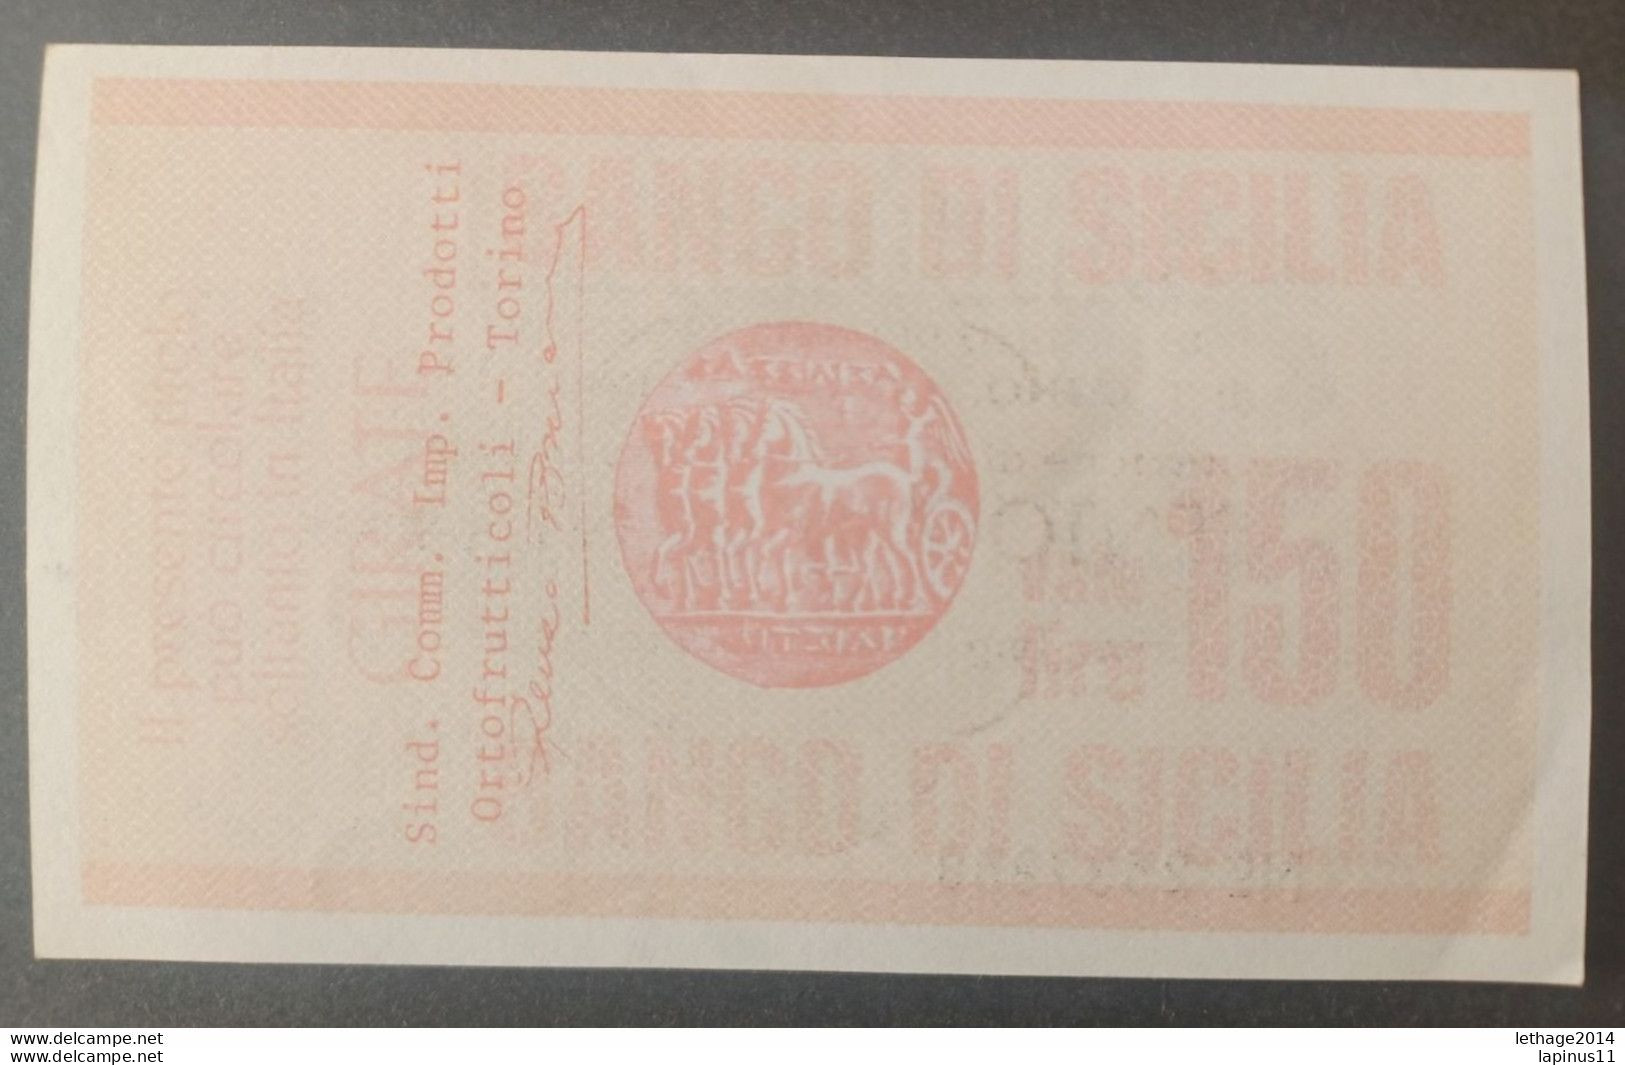 BANKNOTE ITALY MINICHECKS 150 LIRE BANCO DI SICILIA 1977 FDS - [10] Assegni E Miniassegni